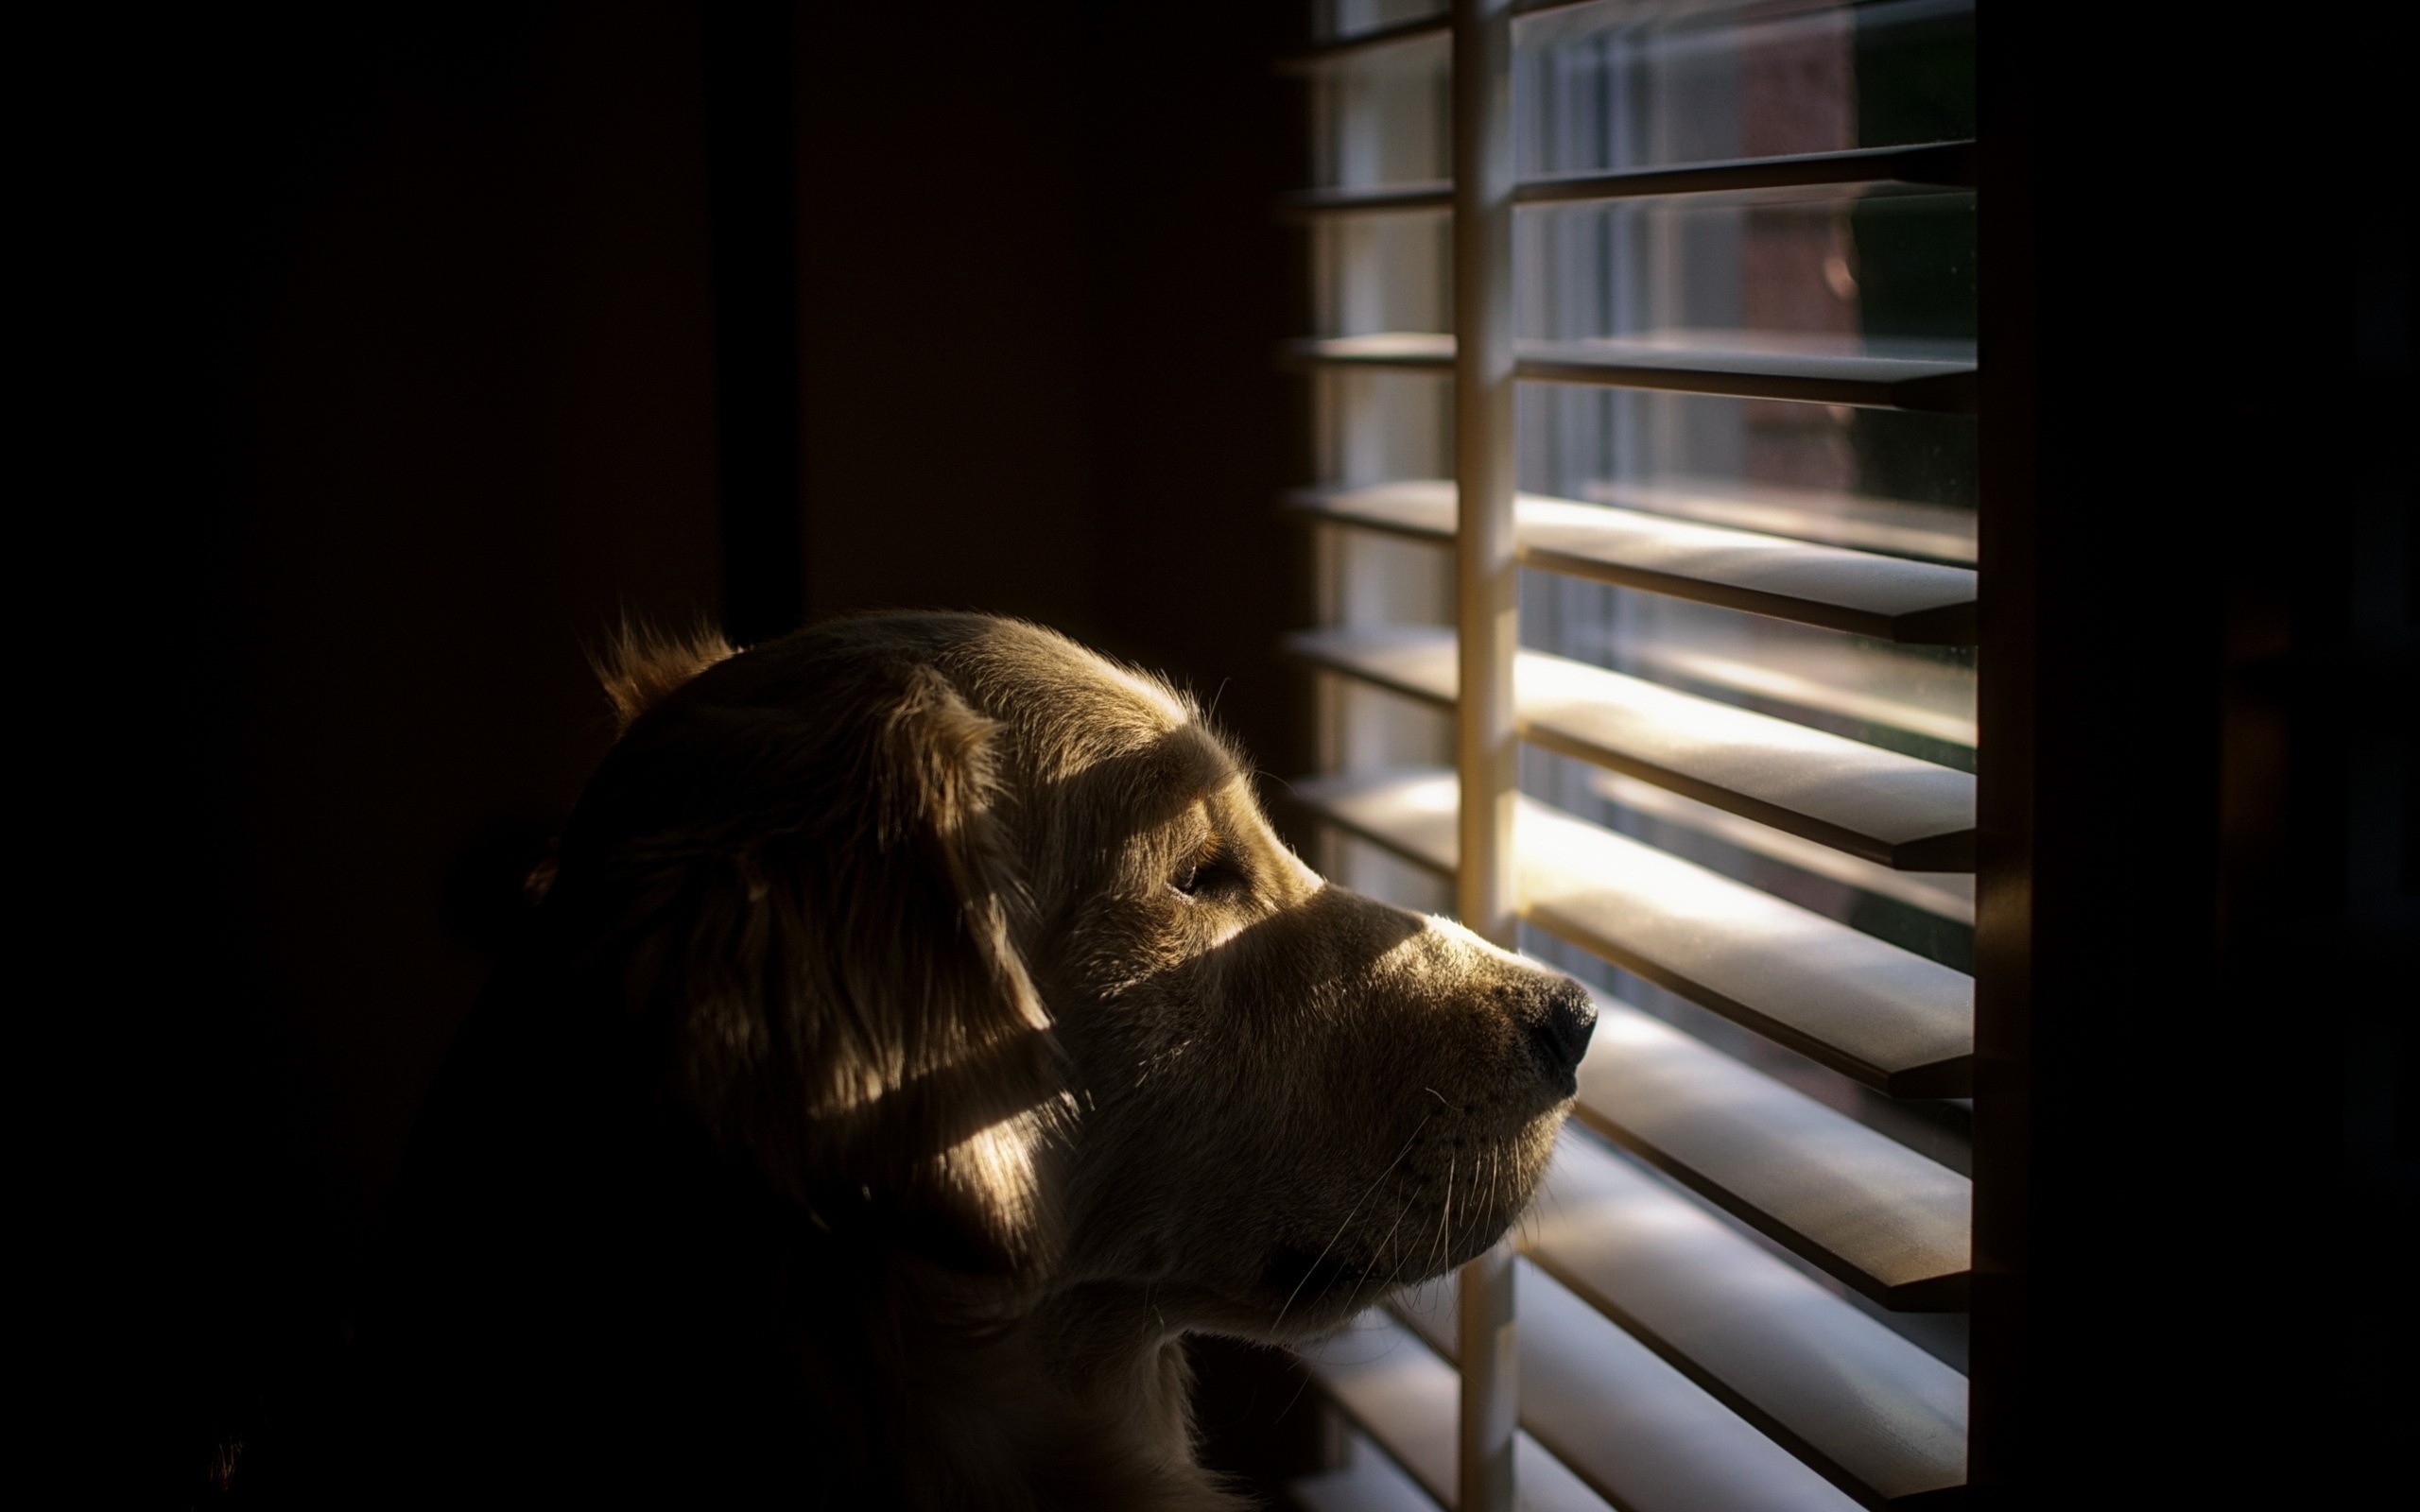 General 2560x1600 dog animals shutters sunlight blinds mammals indoors closeup low light